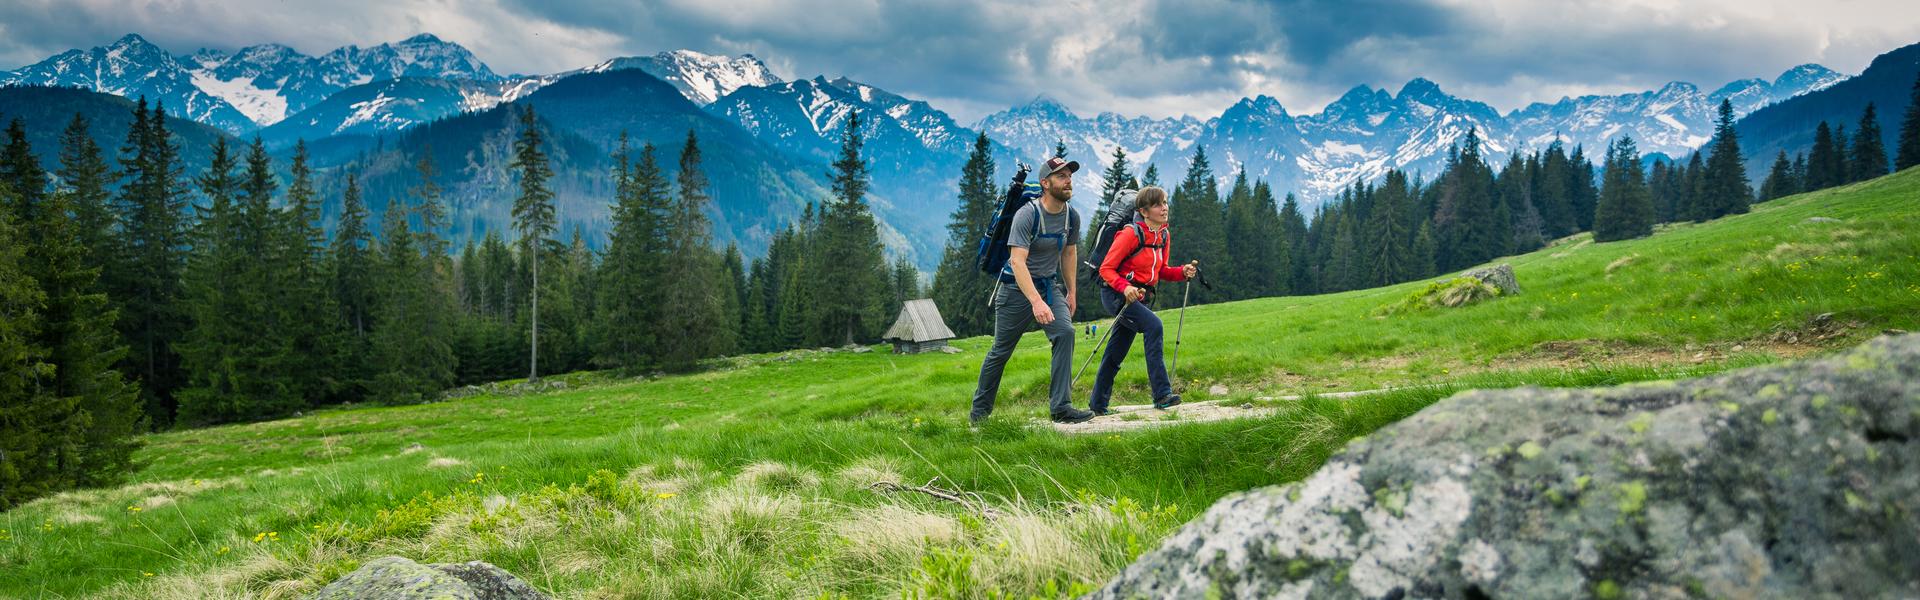 Zwei Personen in Sportkleidung mit Nordic-Walking-Stöcken, die an einem Berghang wandern. Im Hintergrund kann man die Berge sehen.